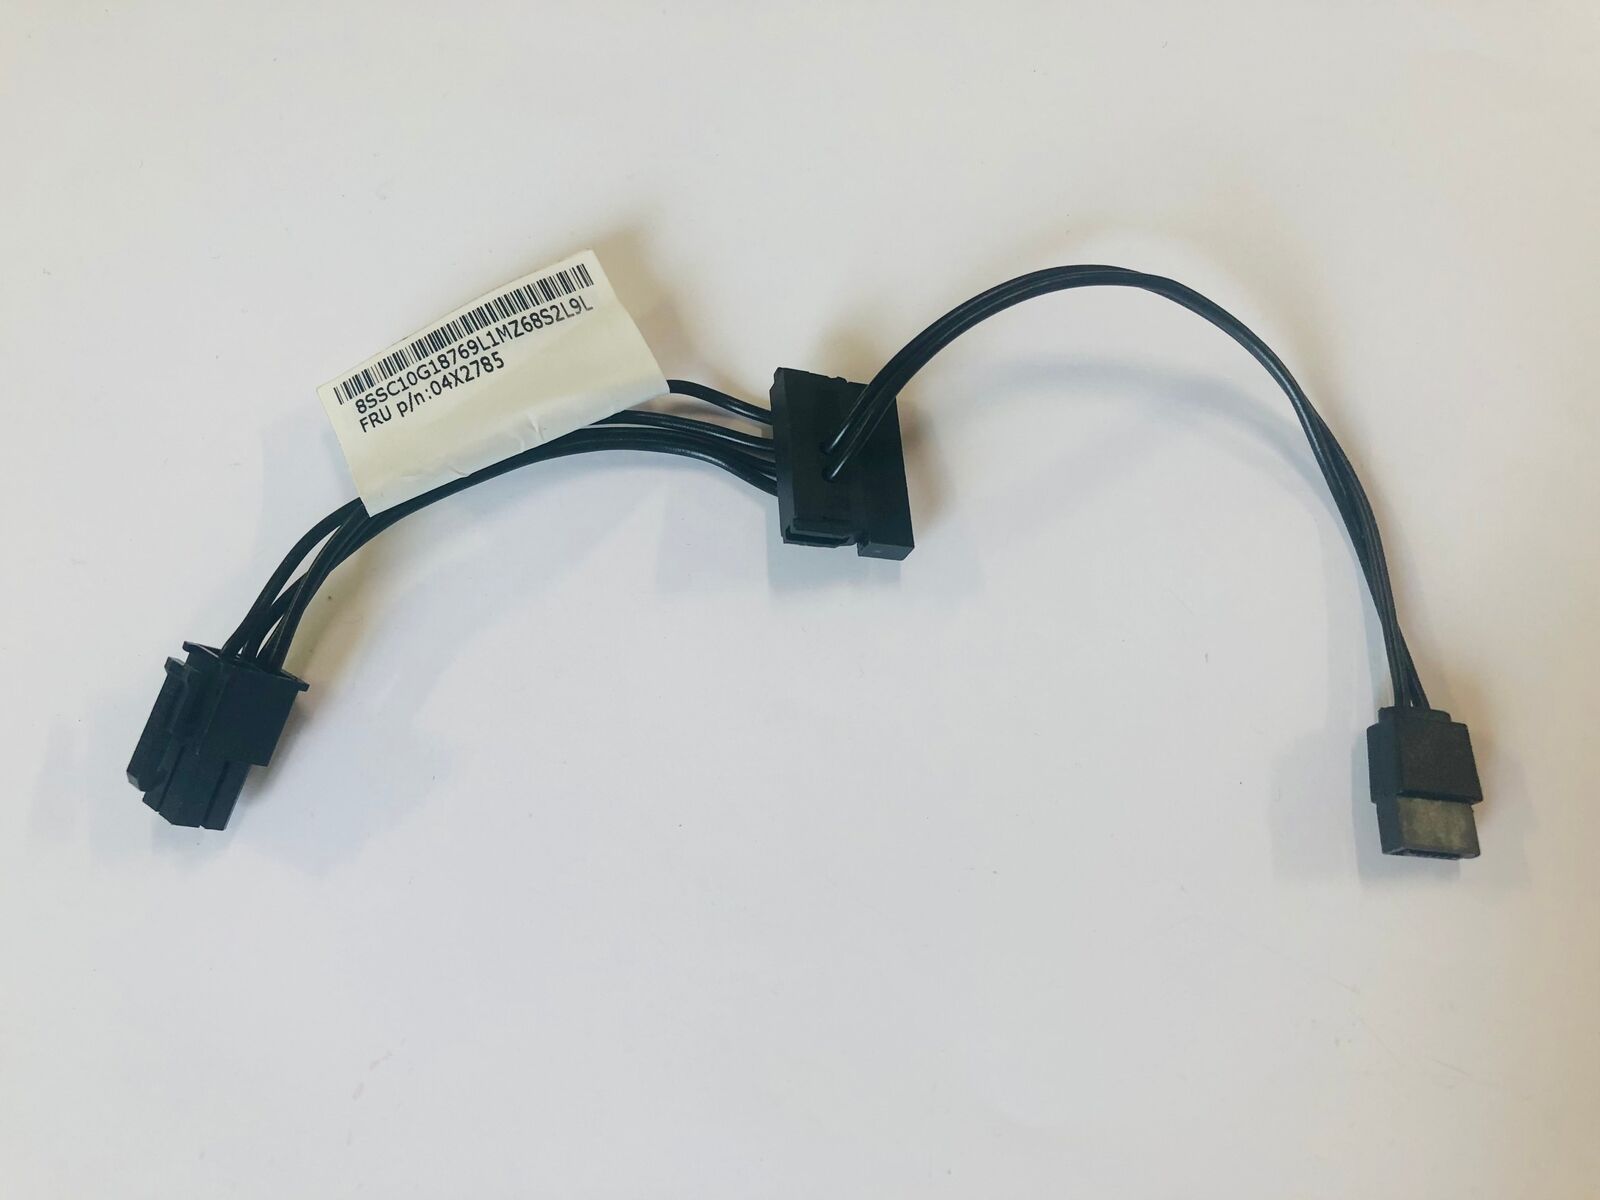 Sata power cable 04X2785 - Lenovo S510